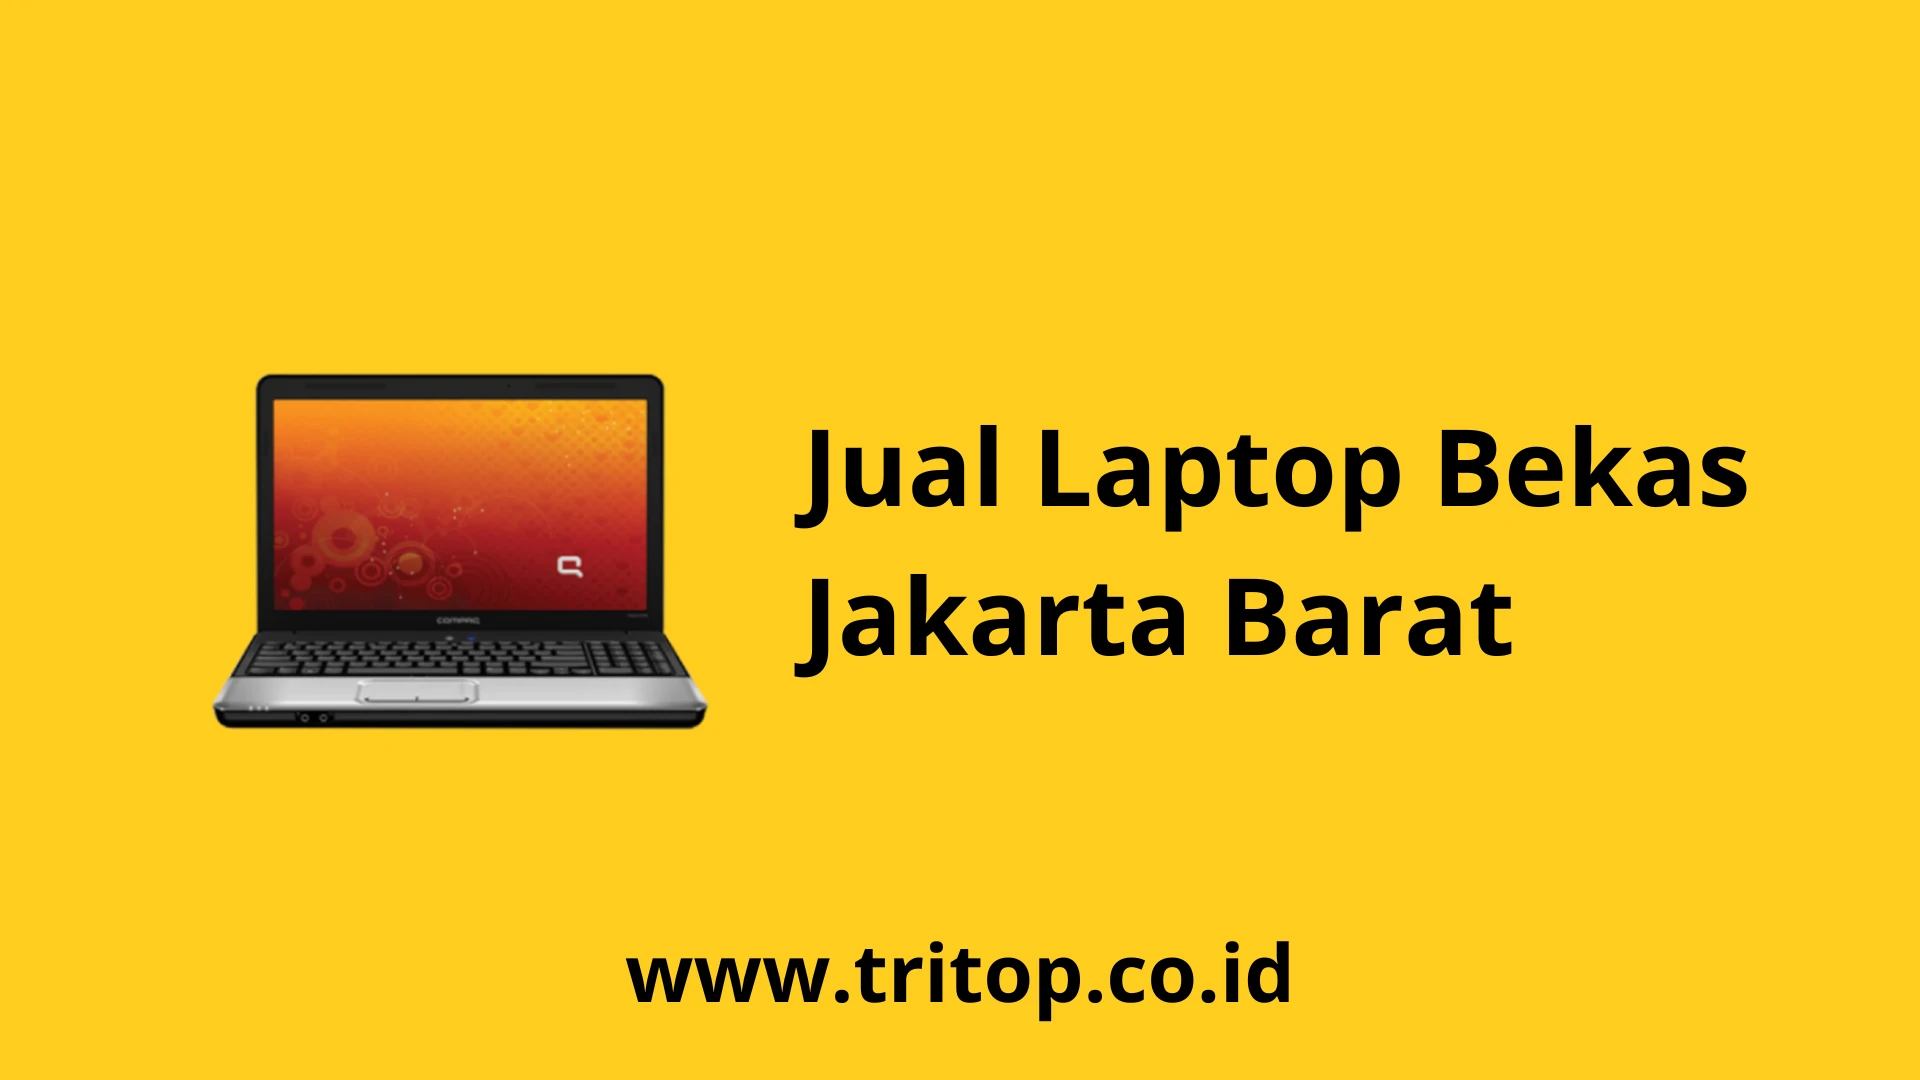 Jual Laptop Bekas Jakarta Barat